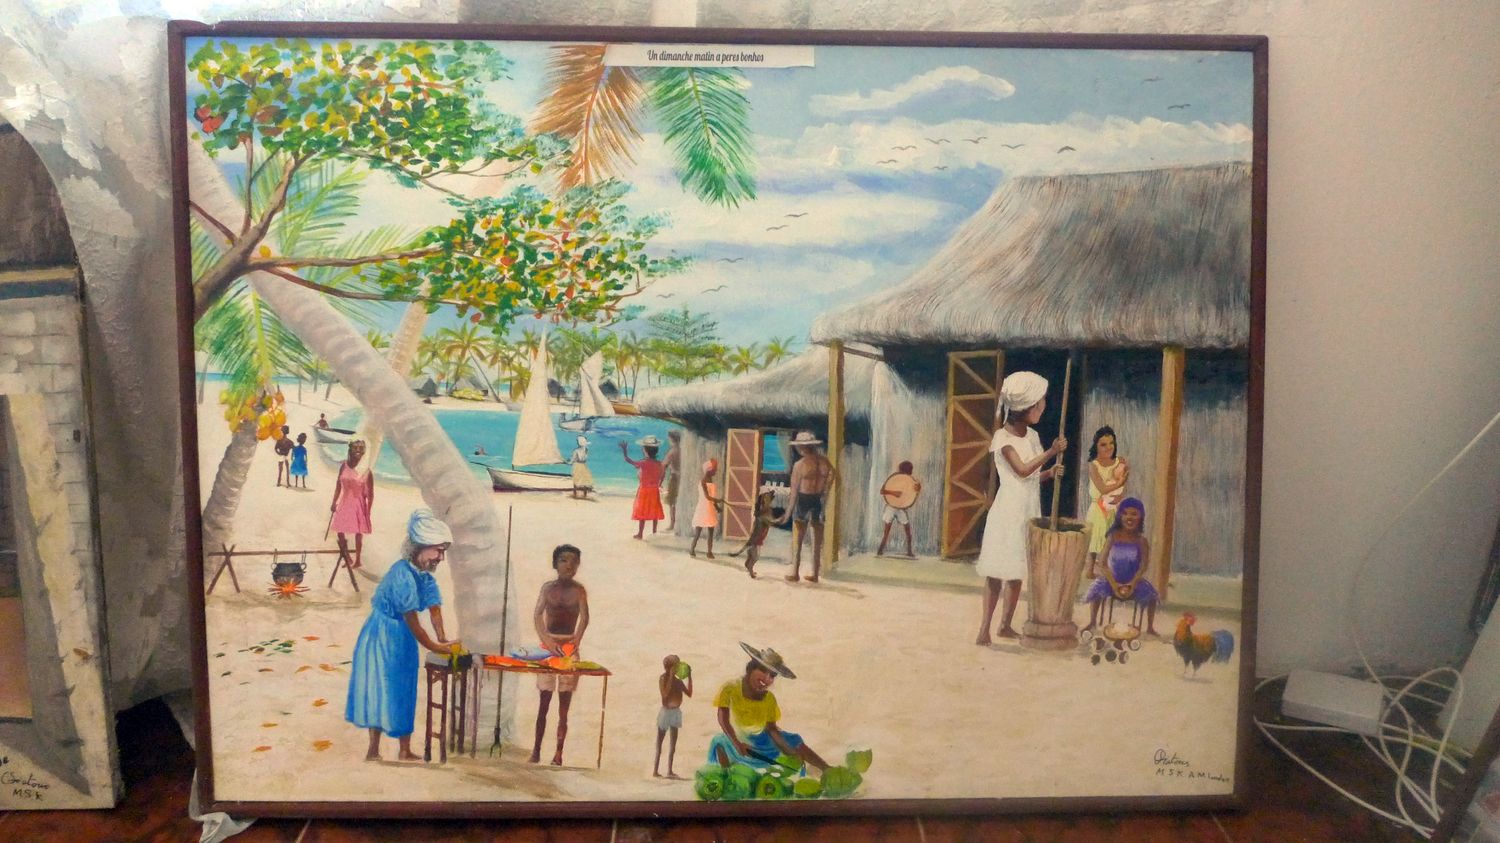 Là encore, une peinture directement extraite des souvenirs de l’artiste : un dimanche sur son île natale, Peros Banhos.